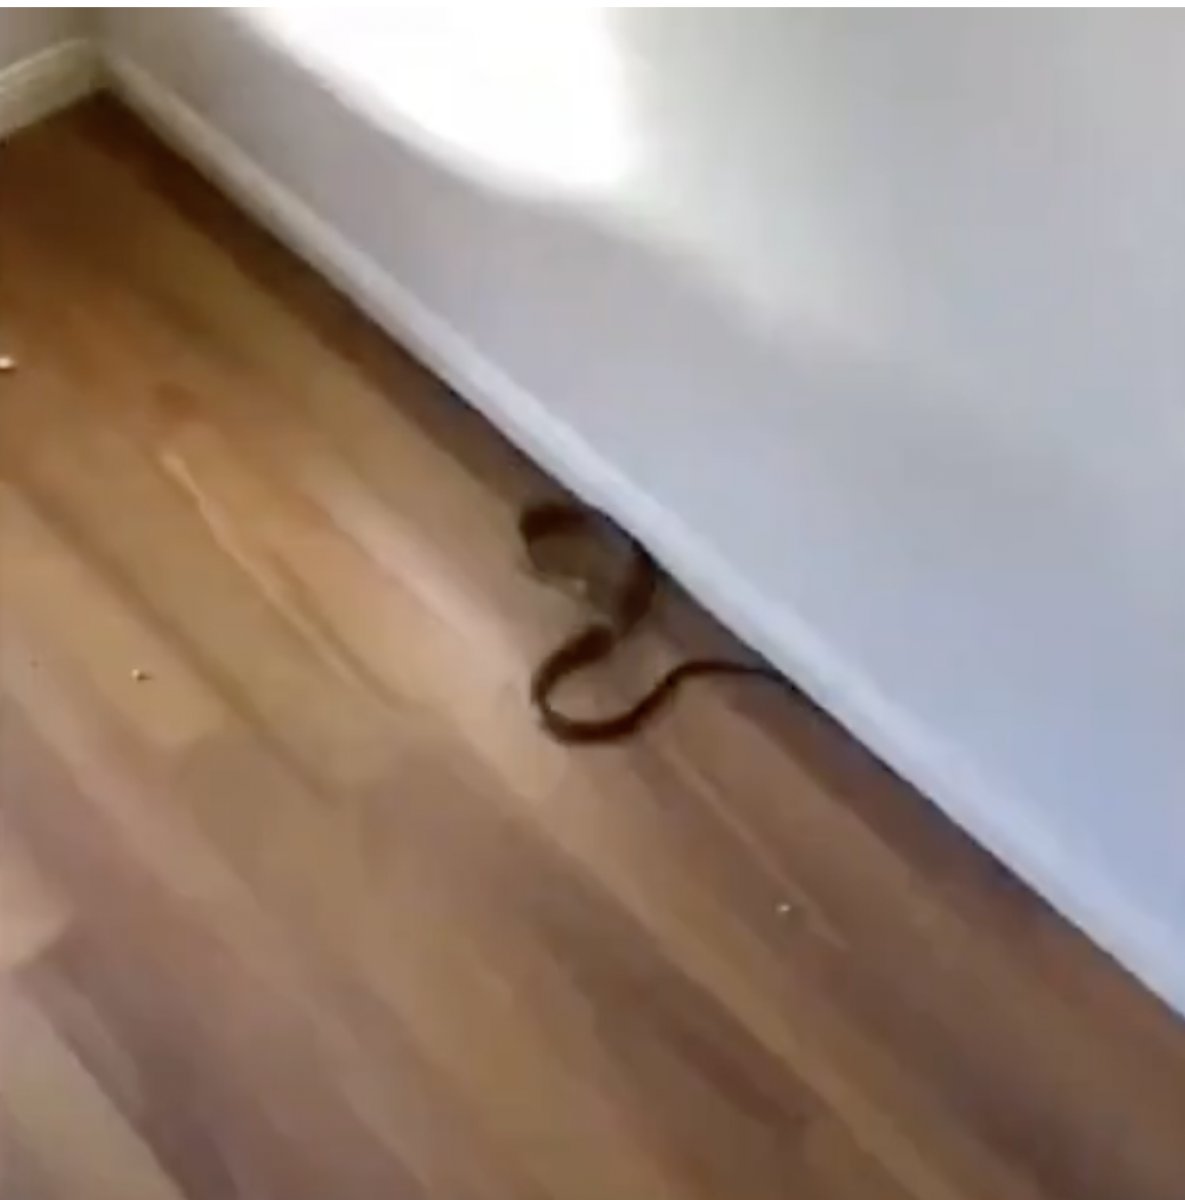 Avusturalyalı çocuk, evinde dünyanın en zehirli ikinci yılanını buldu #3